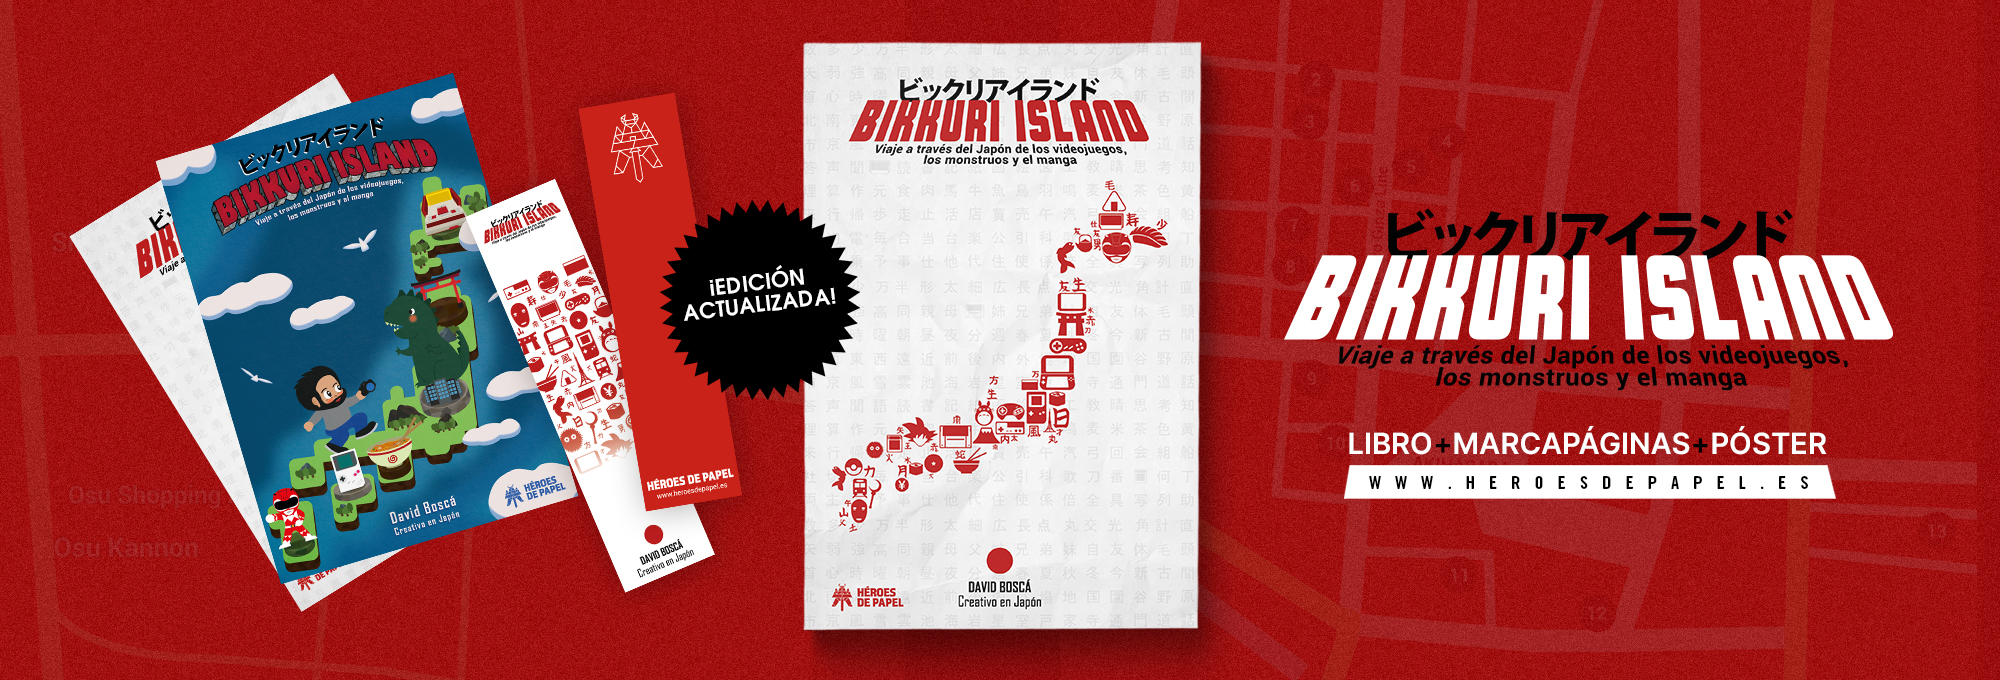 Bikkuri Island Viaje al Japón de los videojuegos, los monstruos y el manga